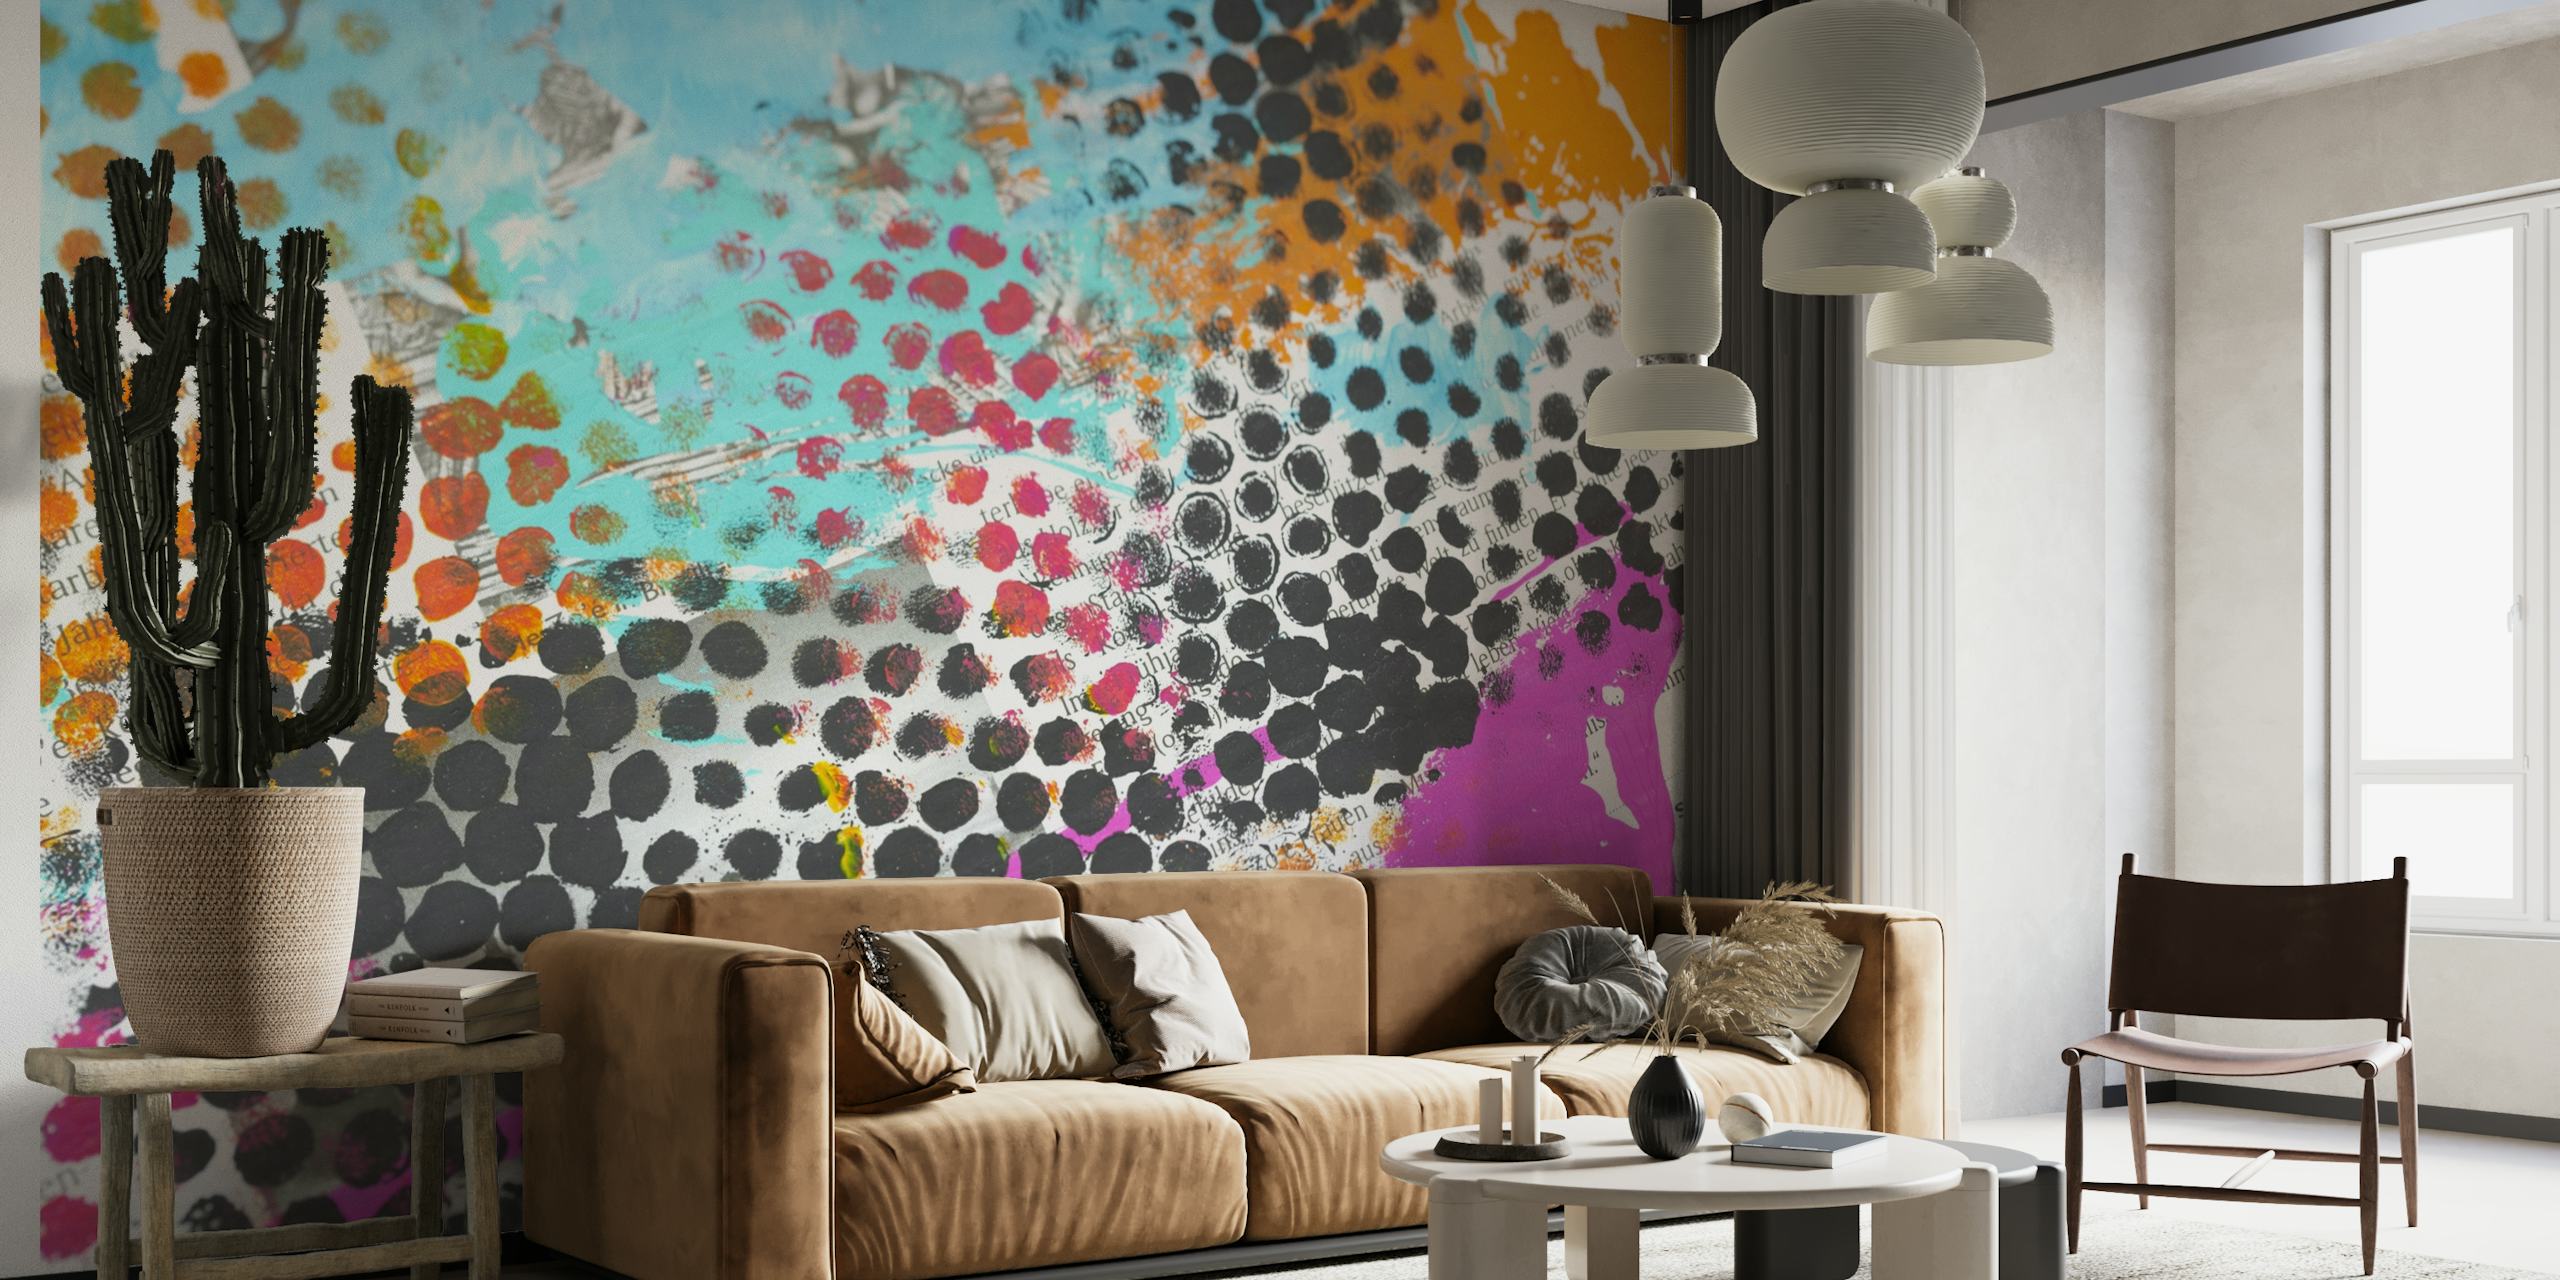 Šareni zidni mural u grunge stilu s točkastim uzorcima i živim bojama